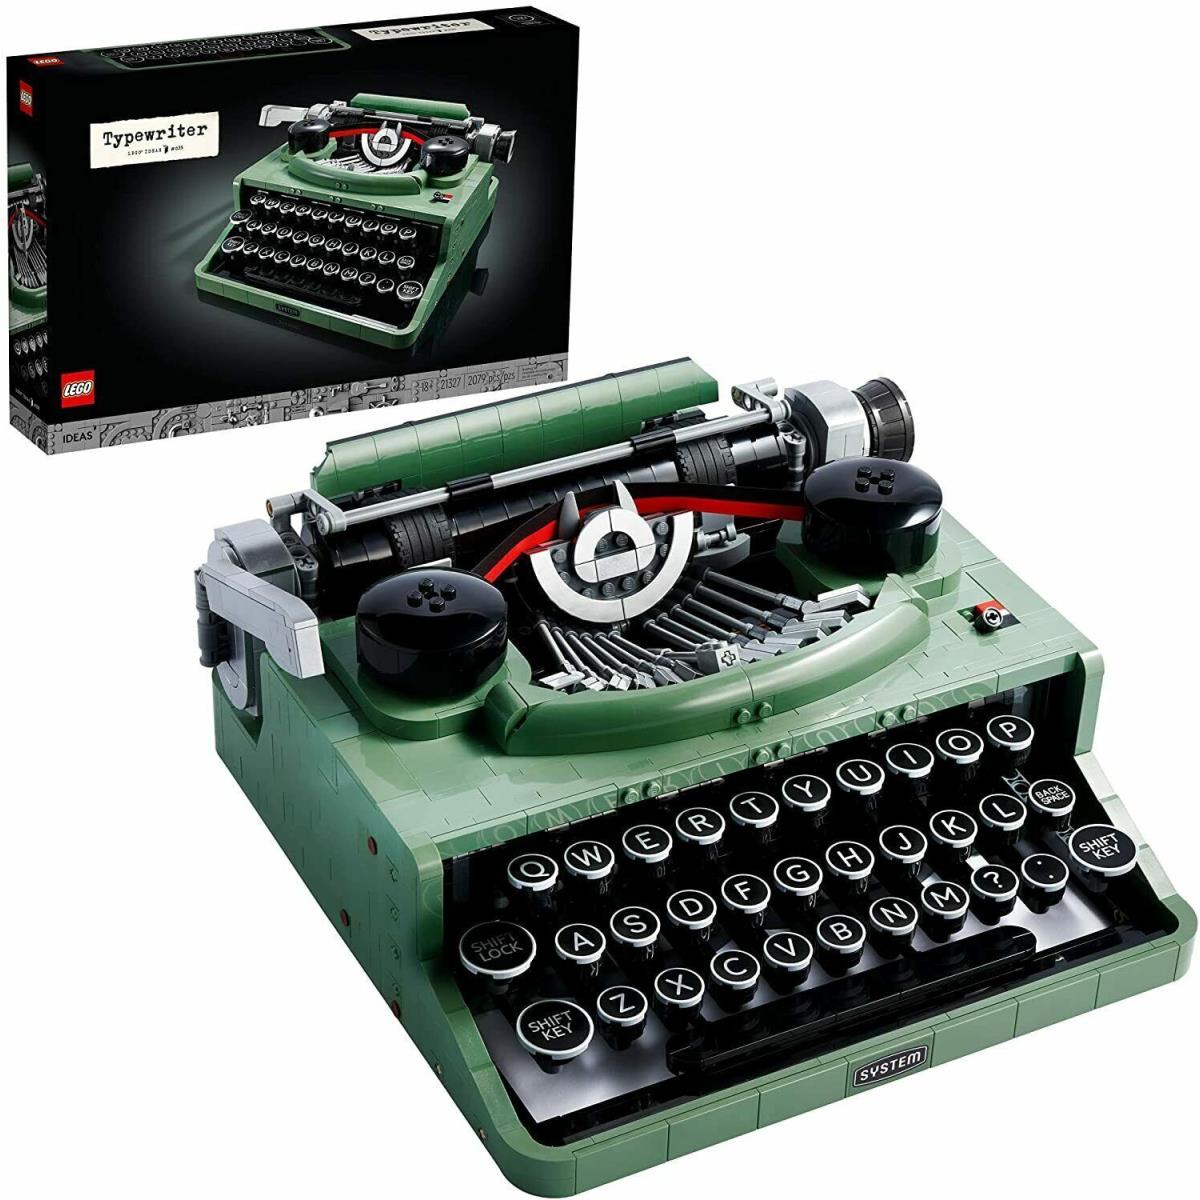 Lego Ideas Typewriter 21327 Building Kit 2079 Pcs Gift Idea Set